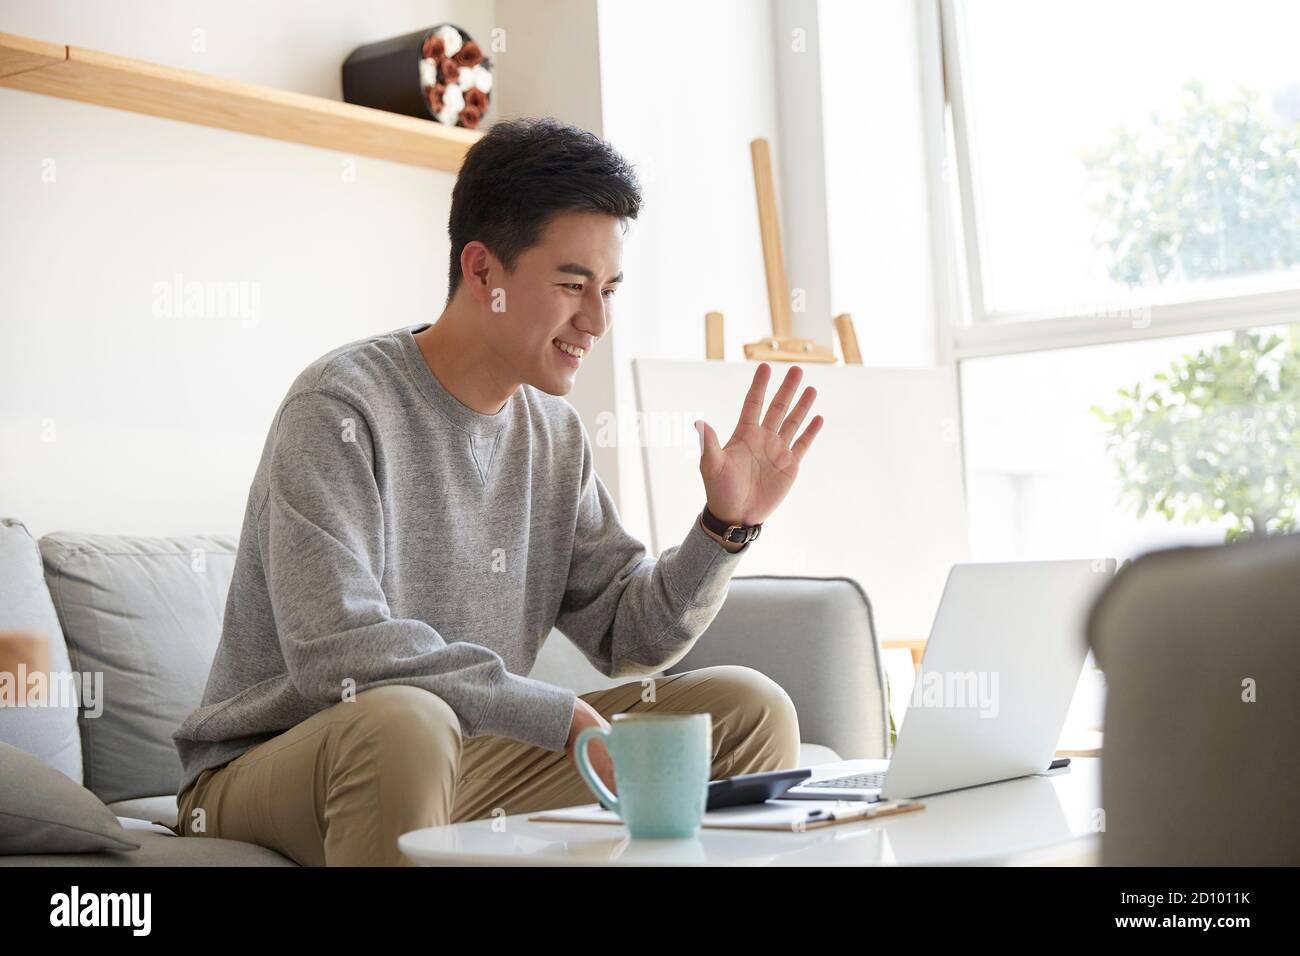 Glücklich und lächelnd junge asiatische Geschäftsführer von zu Hause aus arbeiten Begrüßung von Kollegen oder Kunden während des Meetings mit Videoanruf Stockfoto